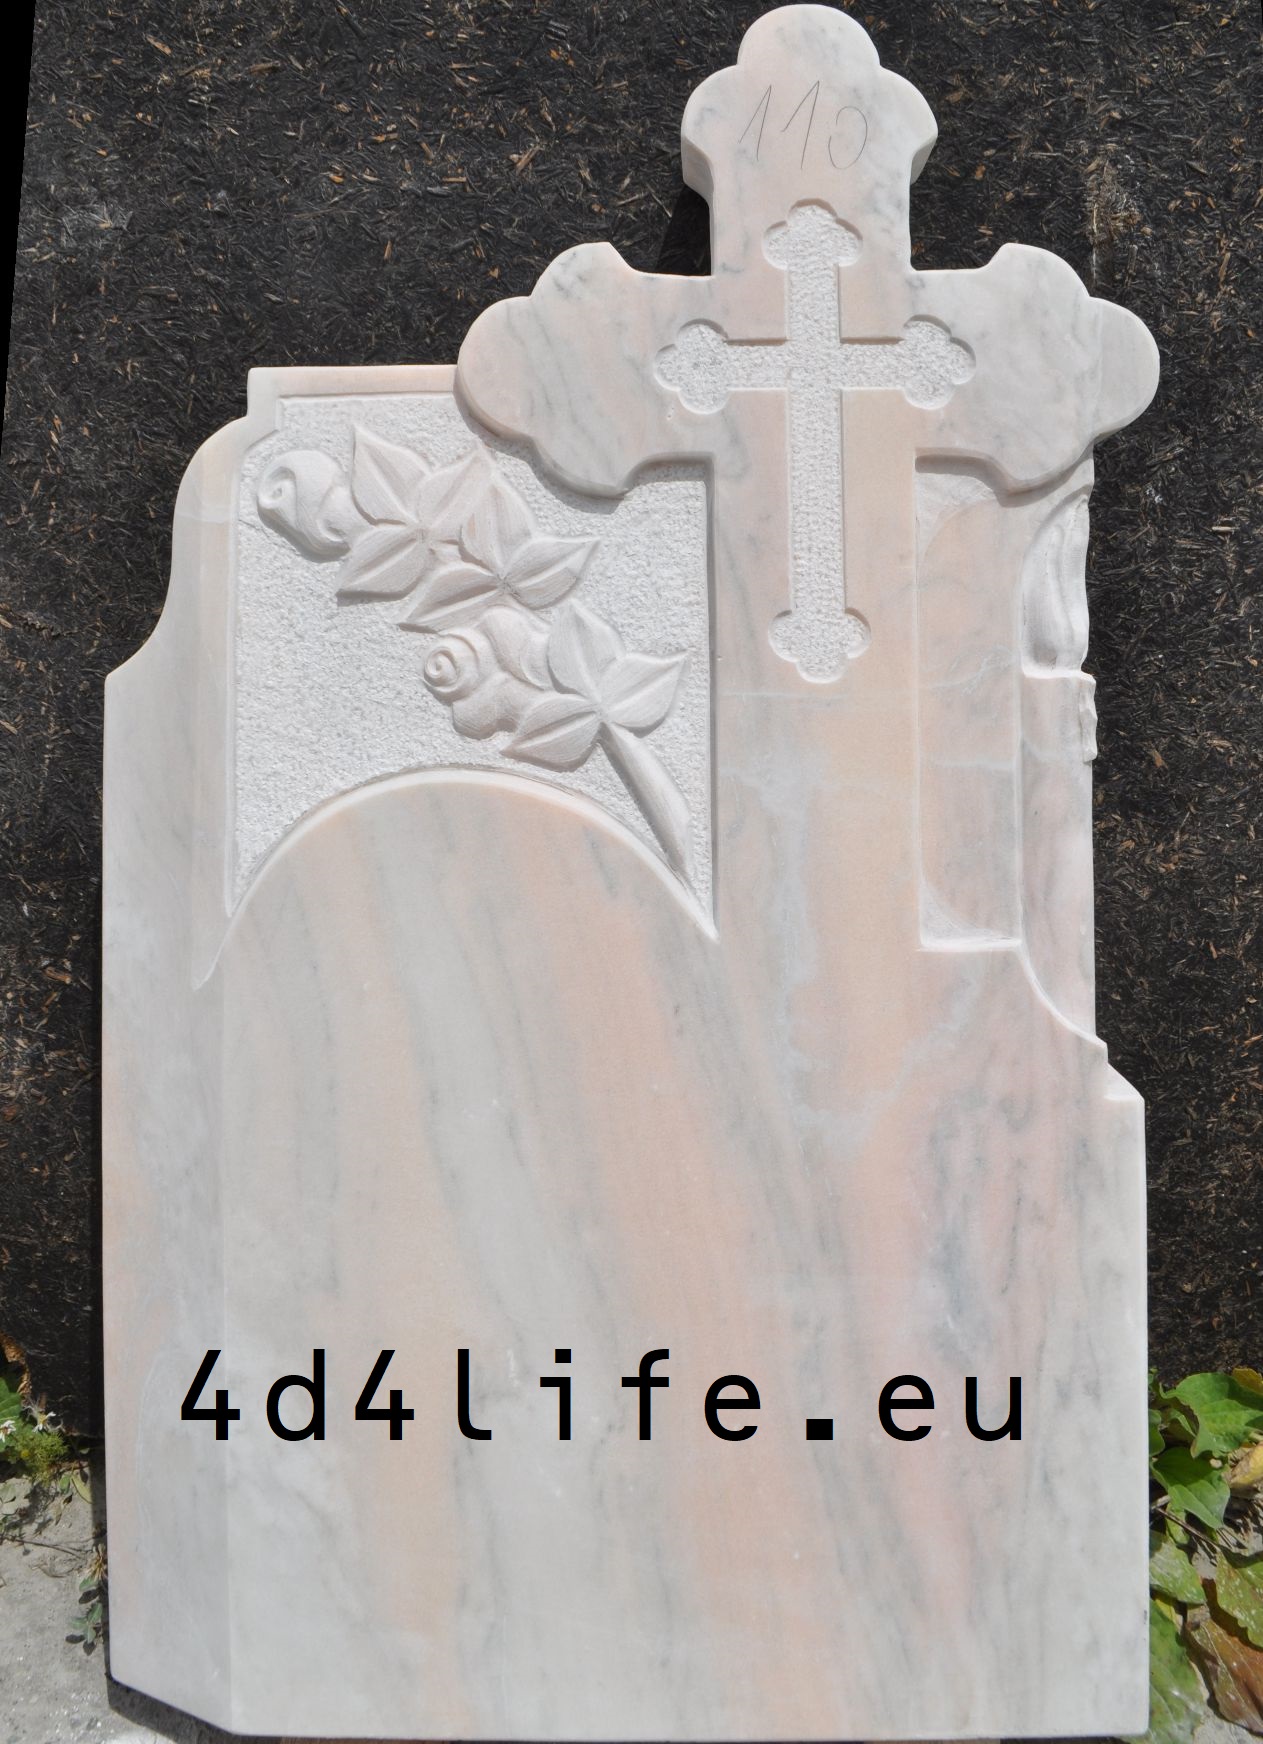 Cruce funerare nodel: 4d4life 110